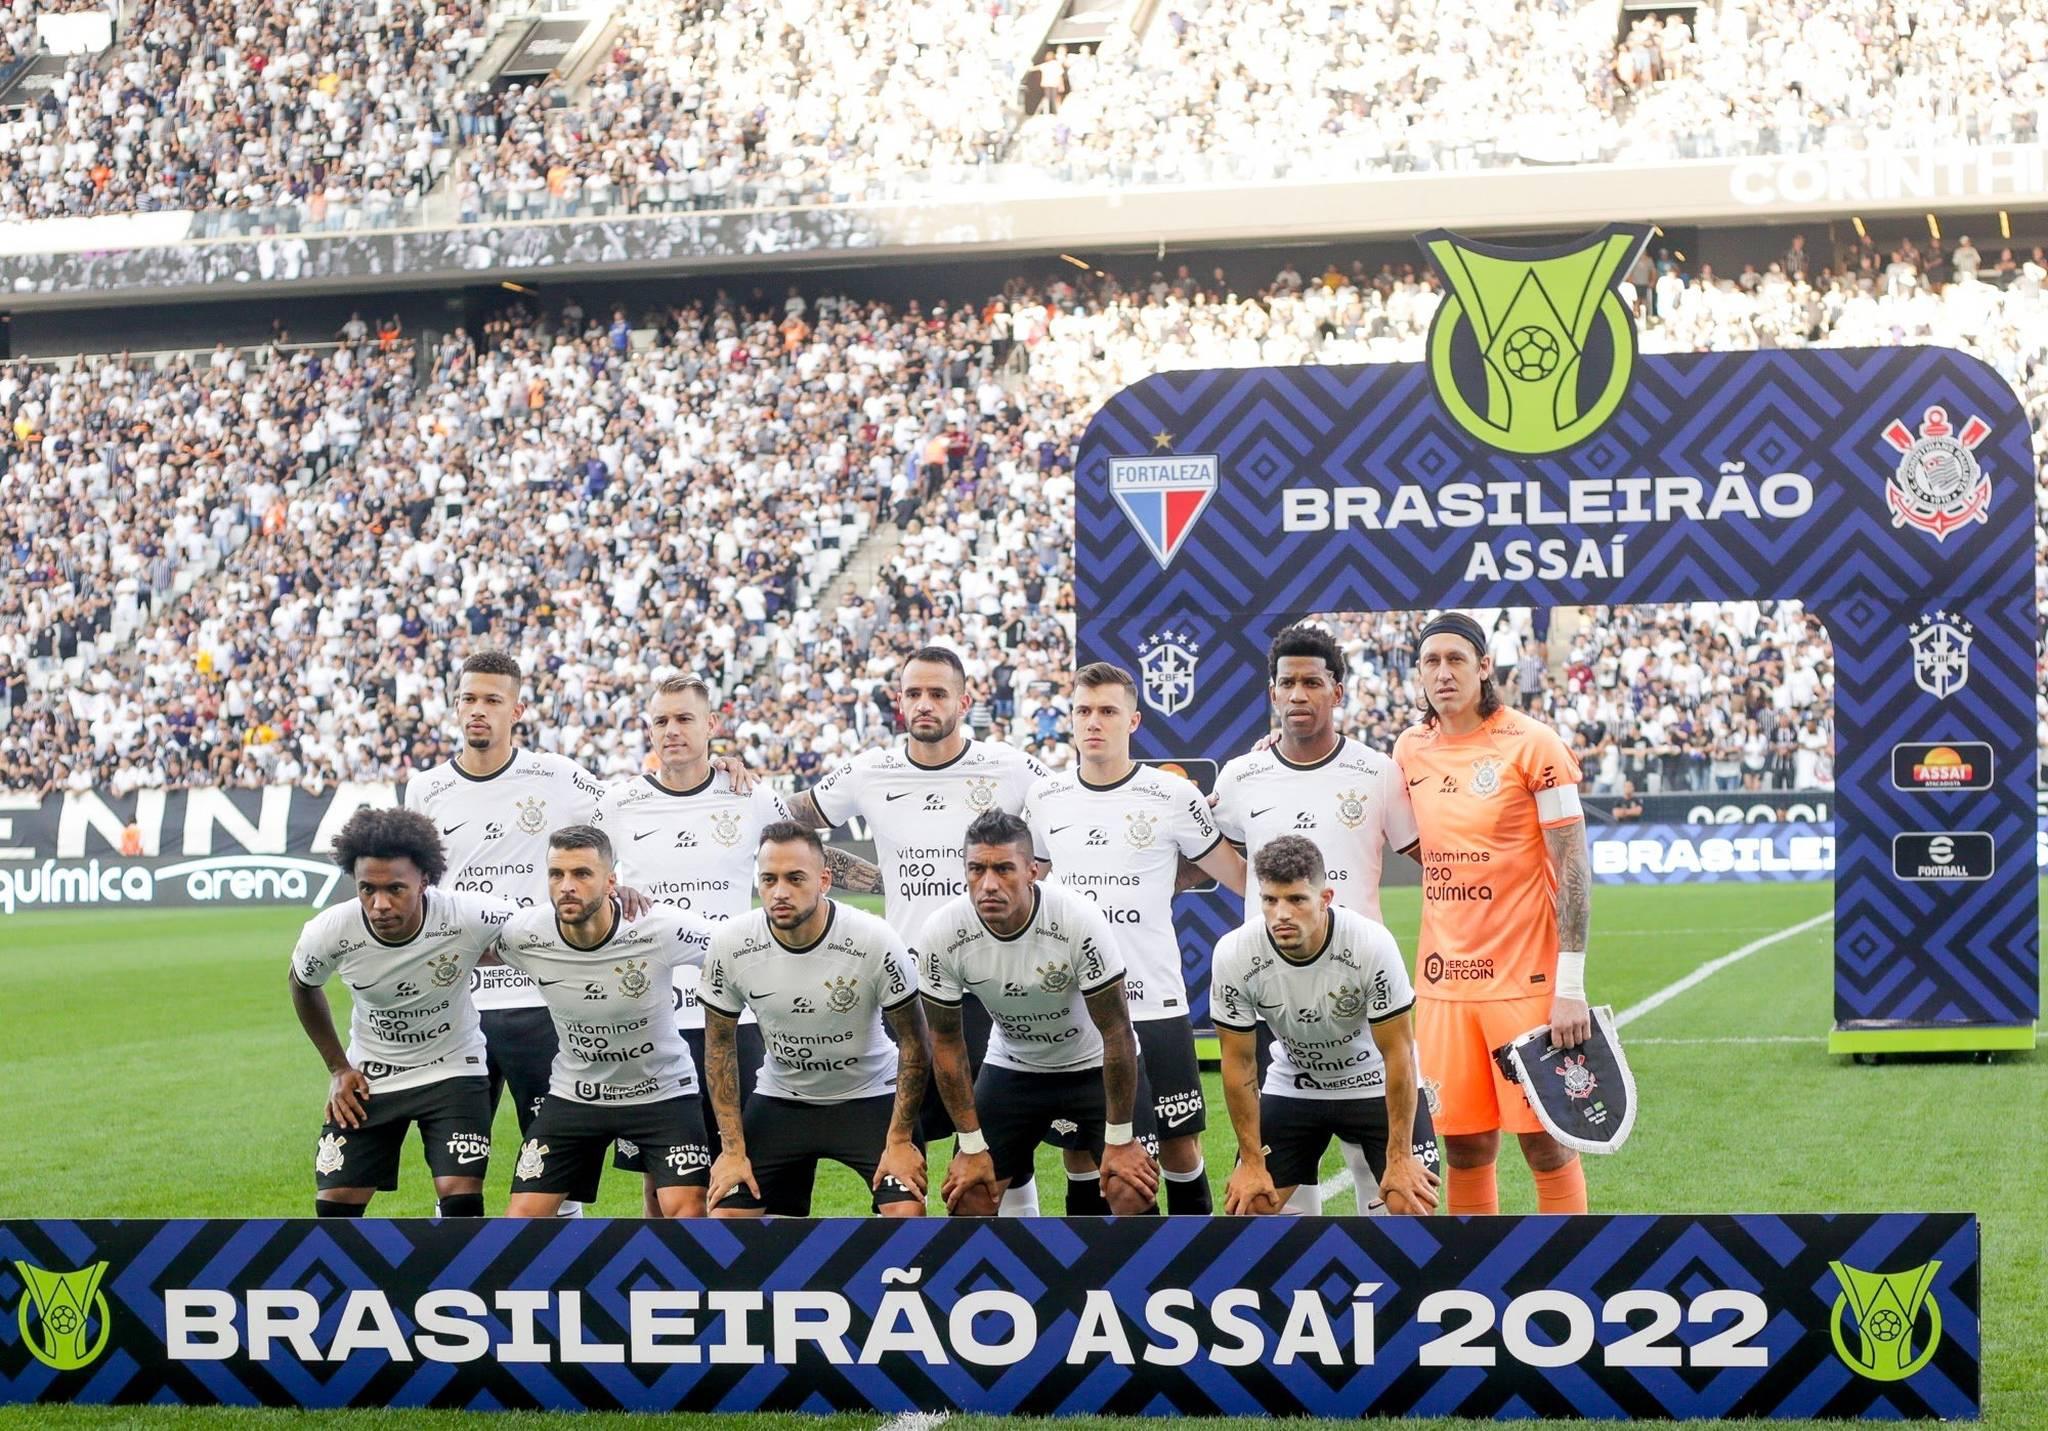 Sao Paulo FC vs America MG: A Clash of Titans